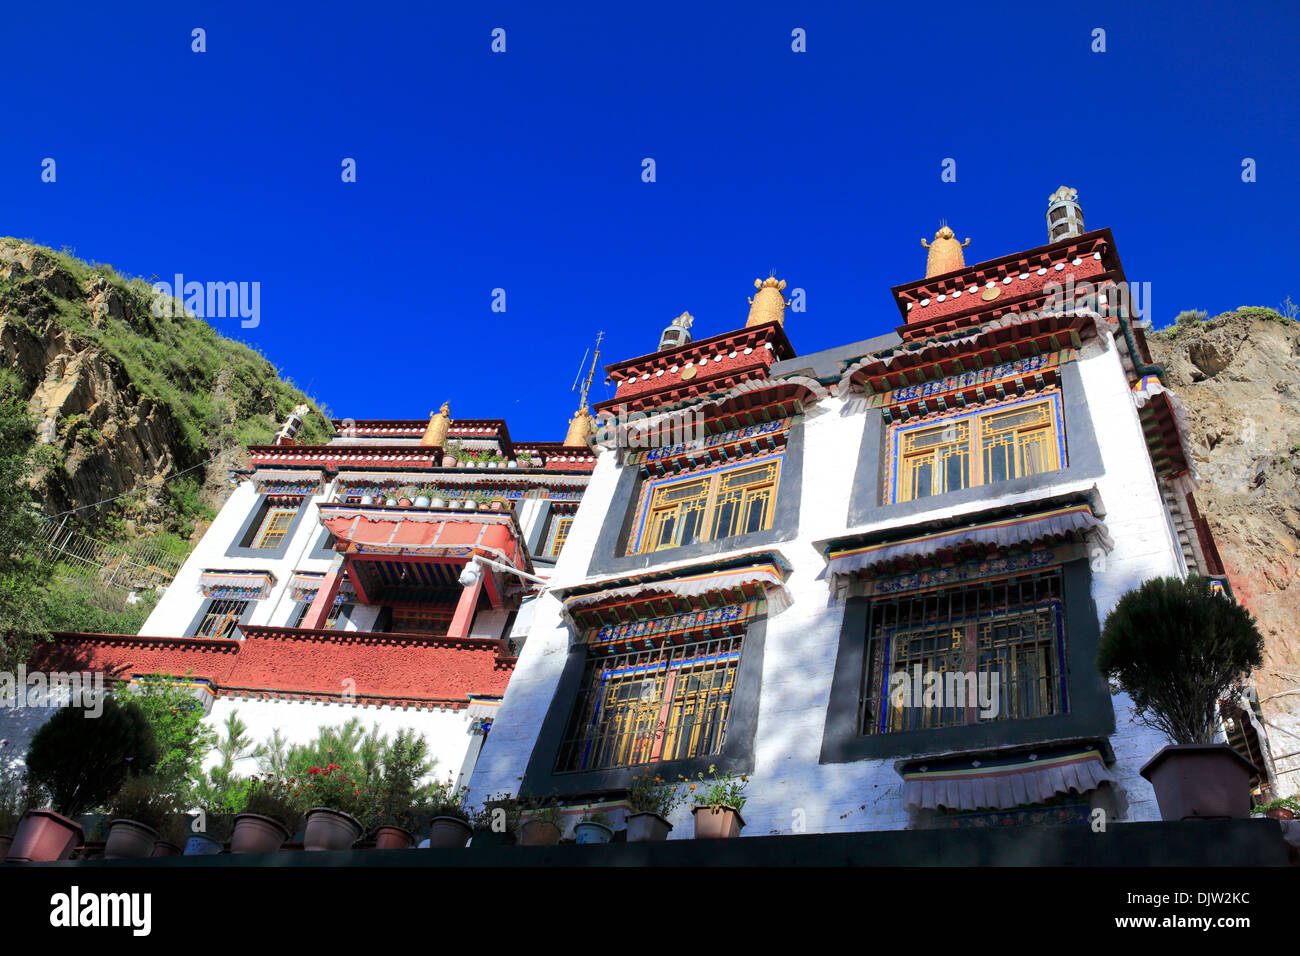 Palubuk Monastery (Chalapulu grotto), Yaowang Mountain, Lhasa, Tibet, China Stock Photo